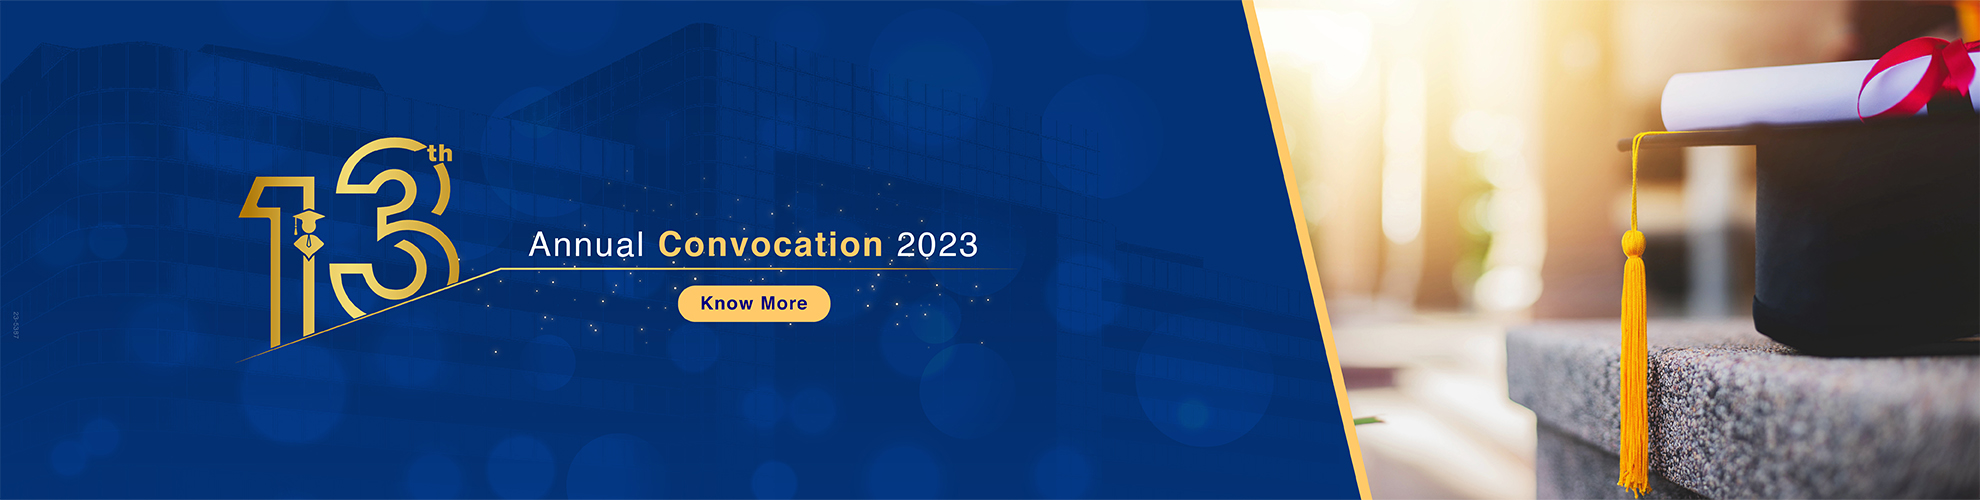 13th Annual Convocation 2023